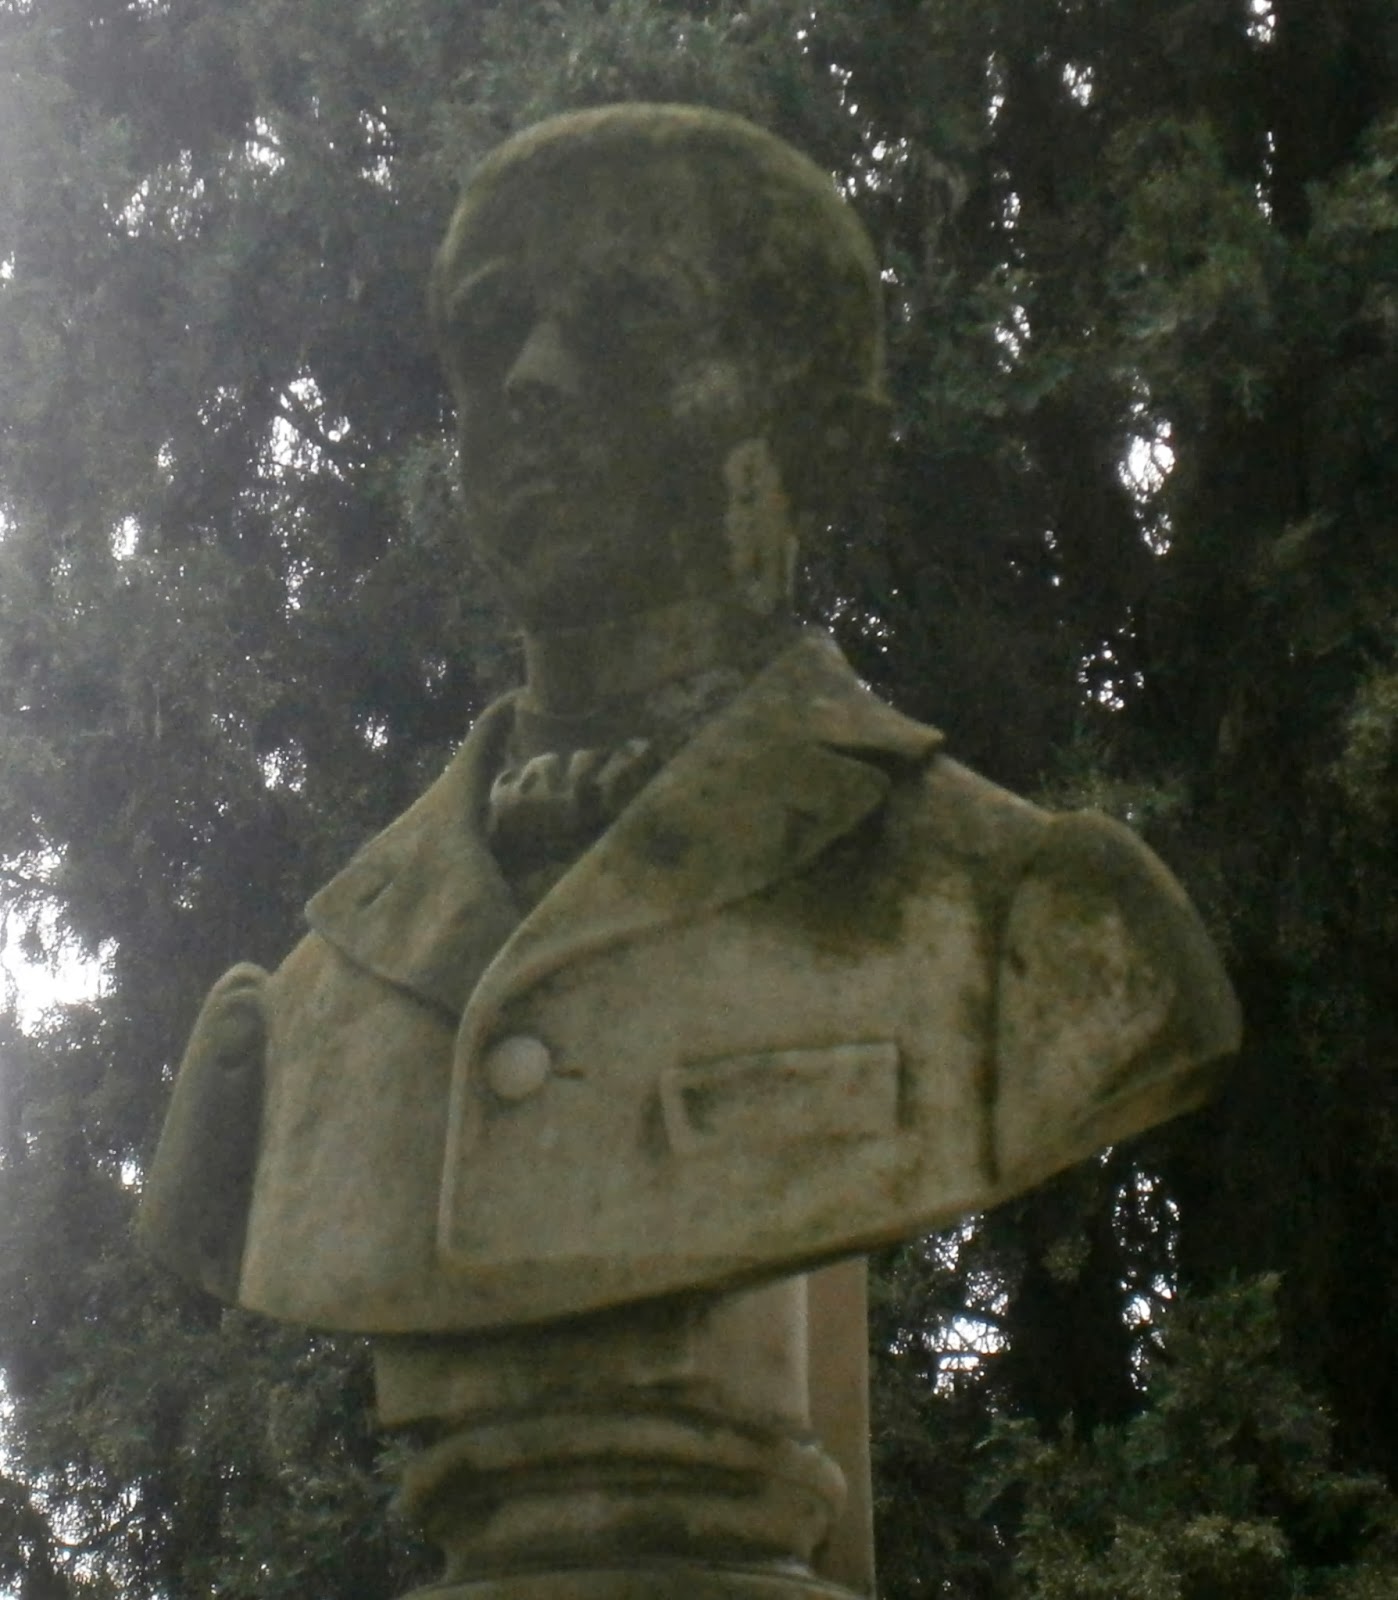 το μνημείο του Οίκου Πλακίδα στο Α΄ Δημοτικό Νεκροταφείο Ιωαννίνων